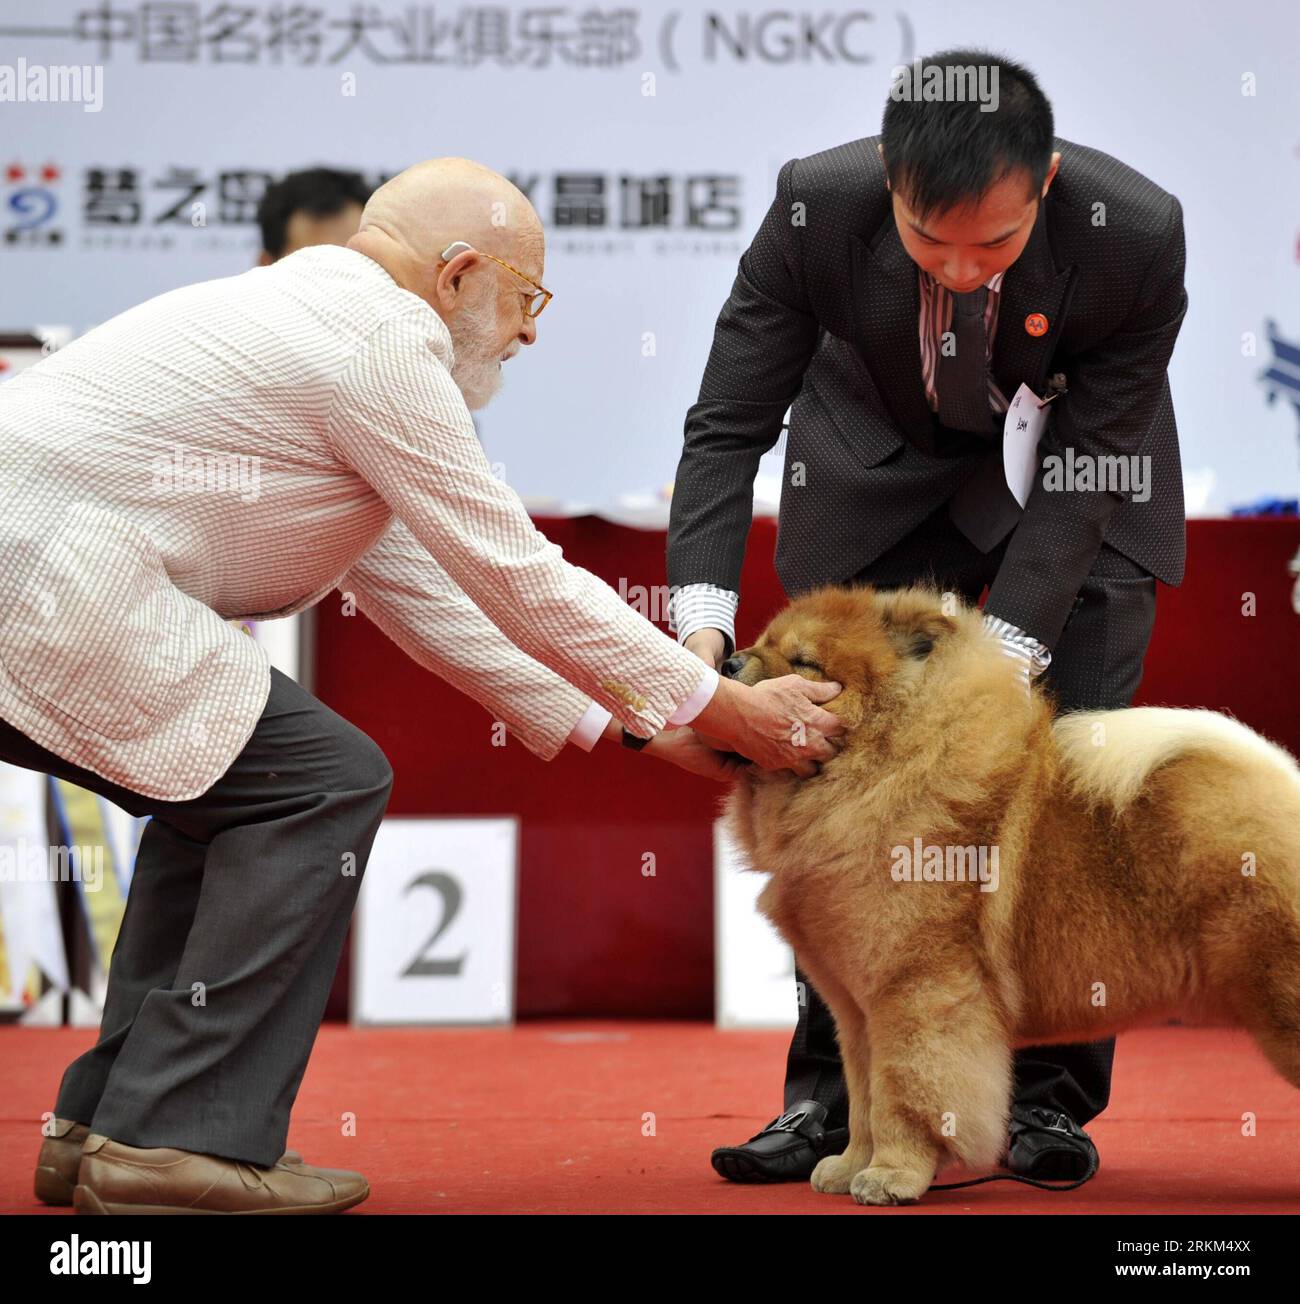 Bildnummer : 56516590 Datum : 27.11.2011 Copyright : imago/Xinhua (111127) -- NANNING, 27 novembre 2011 (Xinhua) -- Un arbitre examine un chien lors du 126e-127e AKC Global Services-NGKC (Guangxi) Champion Show à Nanning, capitale de la région autonome de Guangxi Zhuang du sud de la Chine, le 27 novembre 2011. Au total, 138 chiens de différentes races de toute la Chine, y compris Hong Kong, Macao et Taiwan, participent au 126e-127e salon des champions AKC Global Services-NGKC (Guangxi) à Nanning. Le spectacle est un événement de haut niveau visant à évaluer les chiens conformément aux normes de race de l'American Kennel Club Banque D'Images